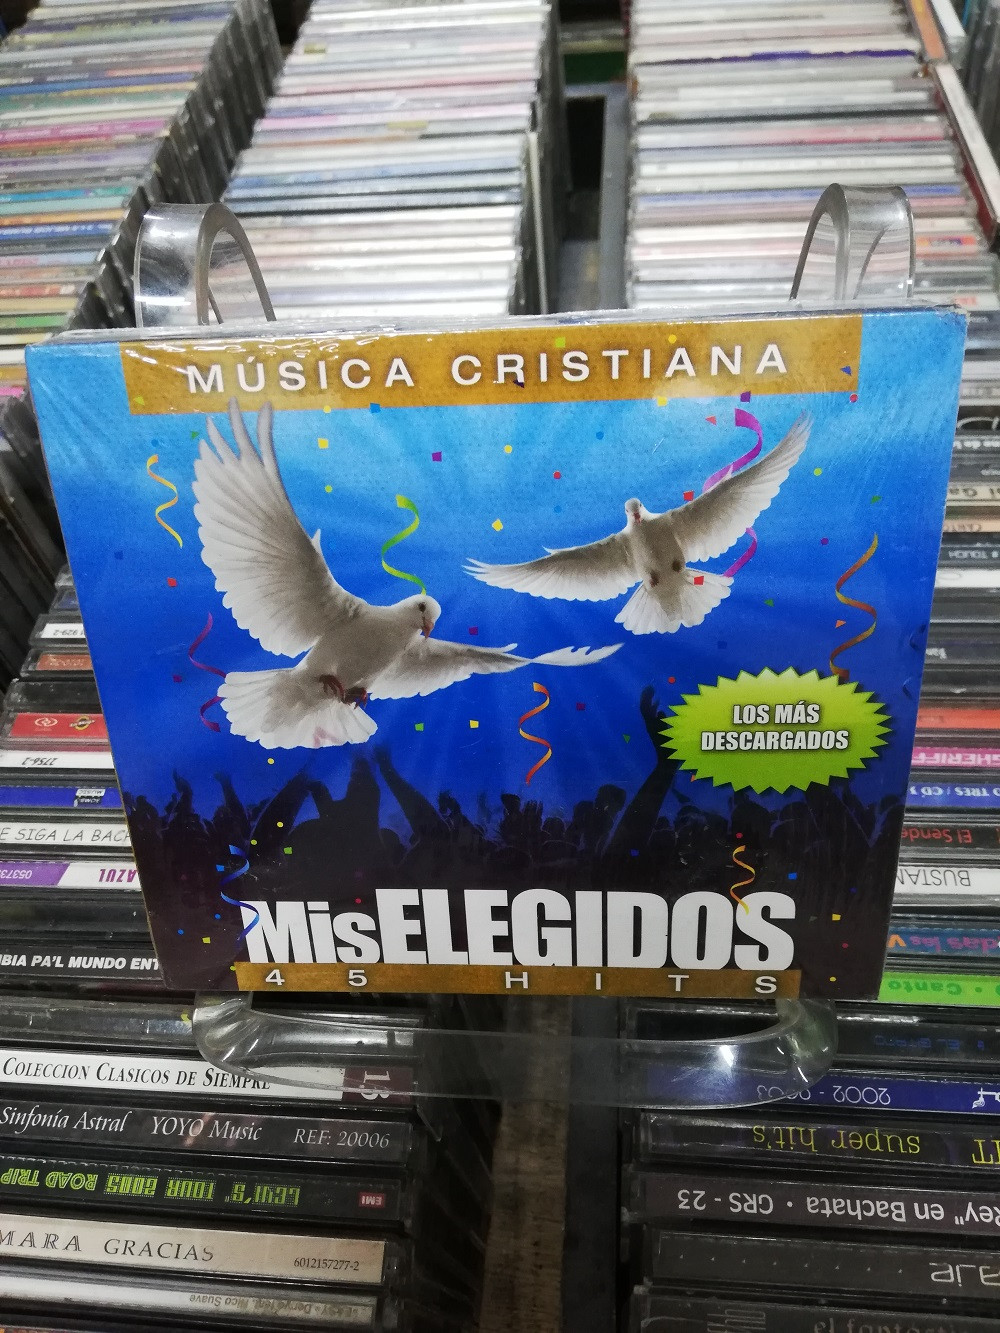 Imagen CD X  3 MIS ELEGIDOS - 45 HITS DE MÚSICA CRISTIANA